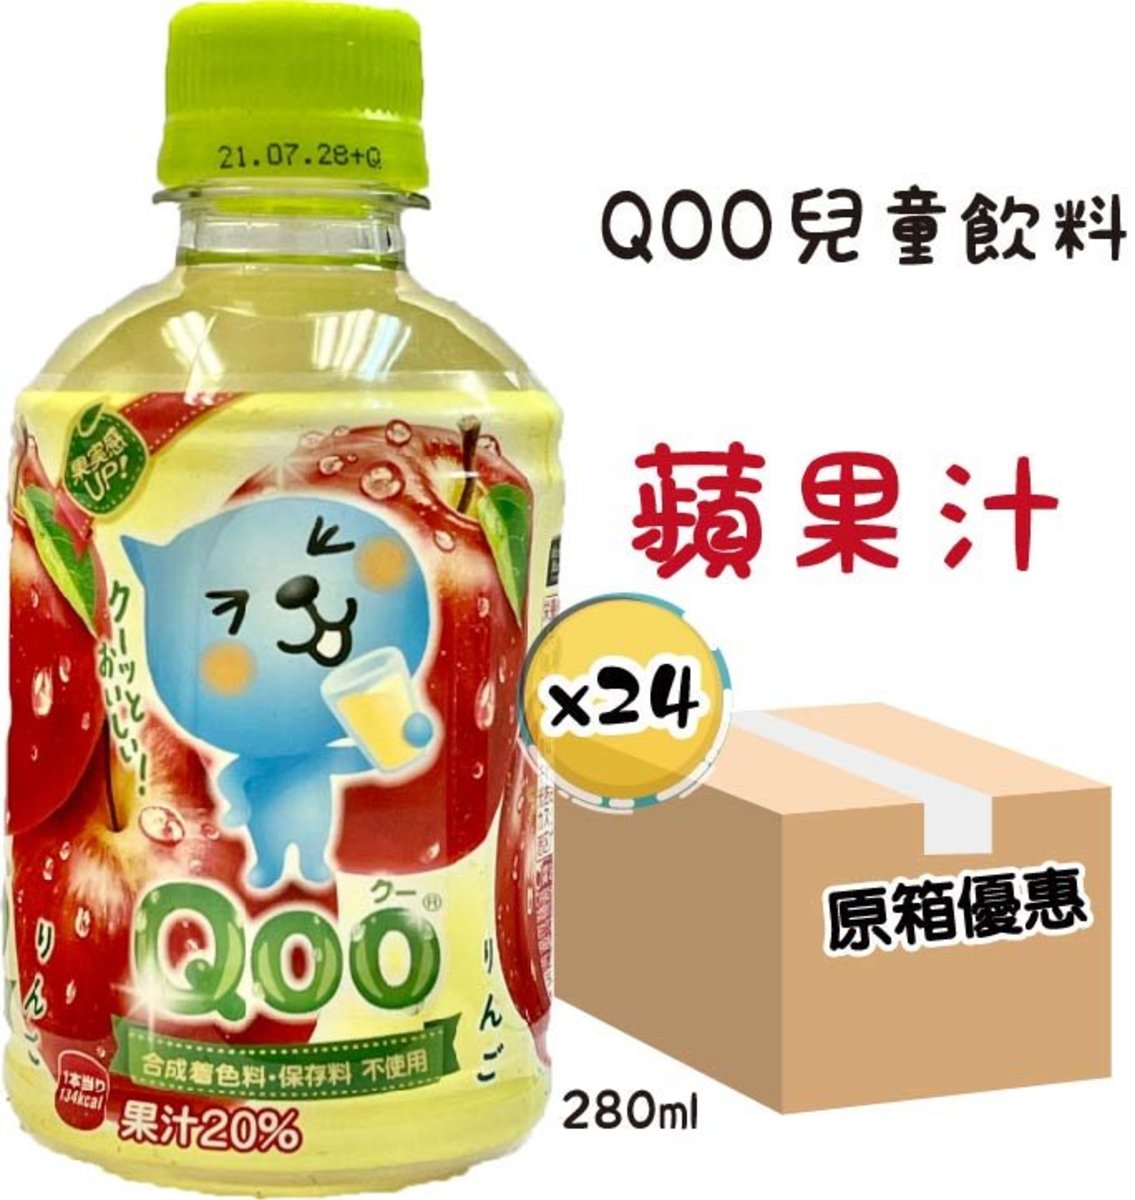 可口可樂 24 件 Qoo兒童飲料 合成着色 保存料不使用 280ml 24 Hktvmall 香港領先網購平台